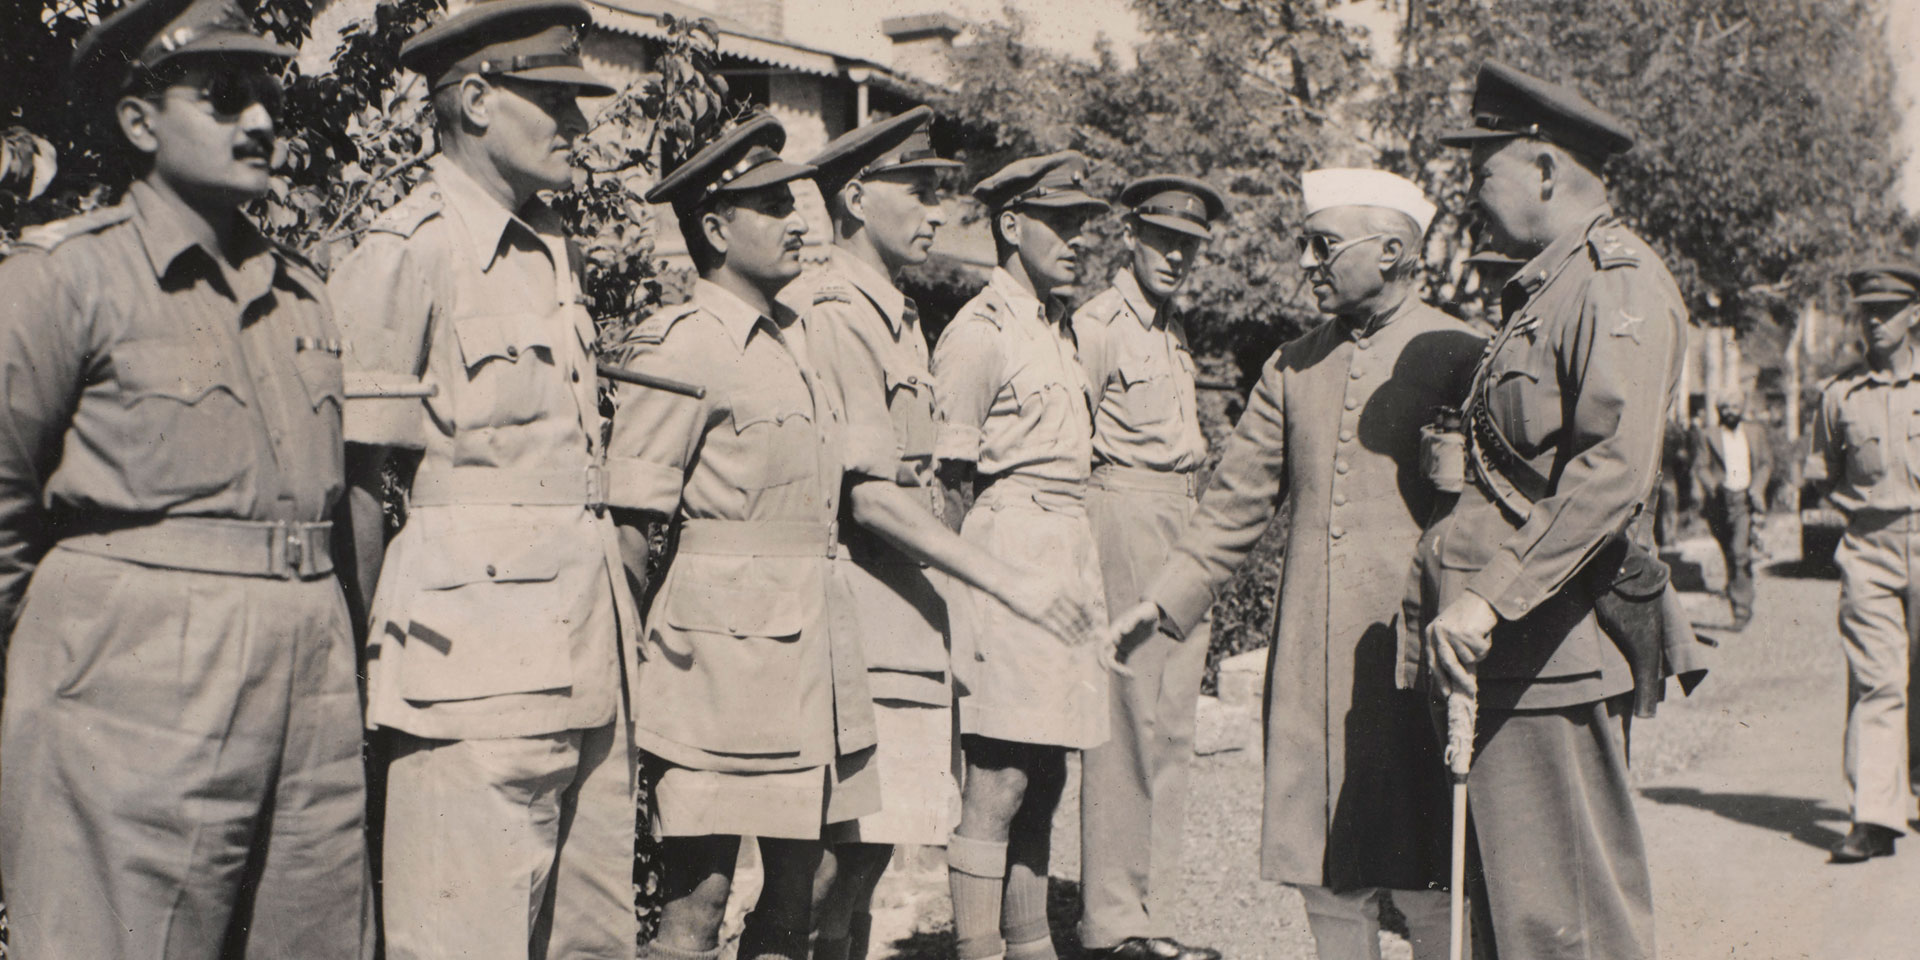 Pandit Nehru being greeted by British officers in Razmak